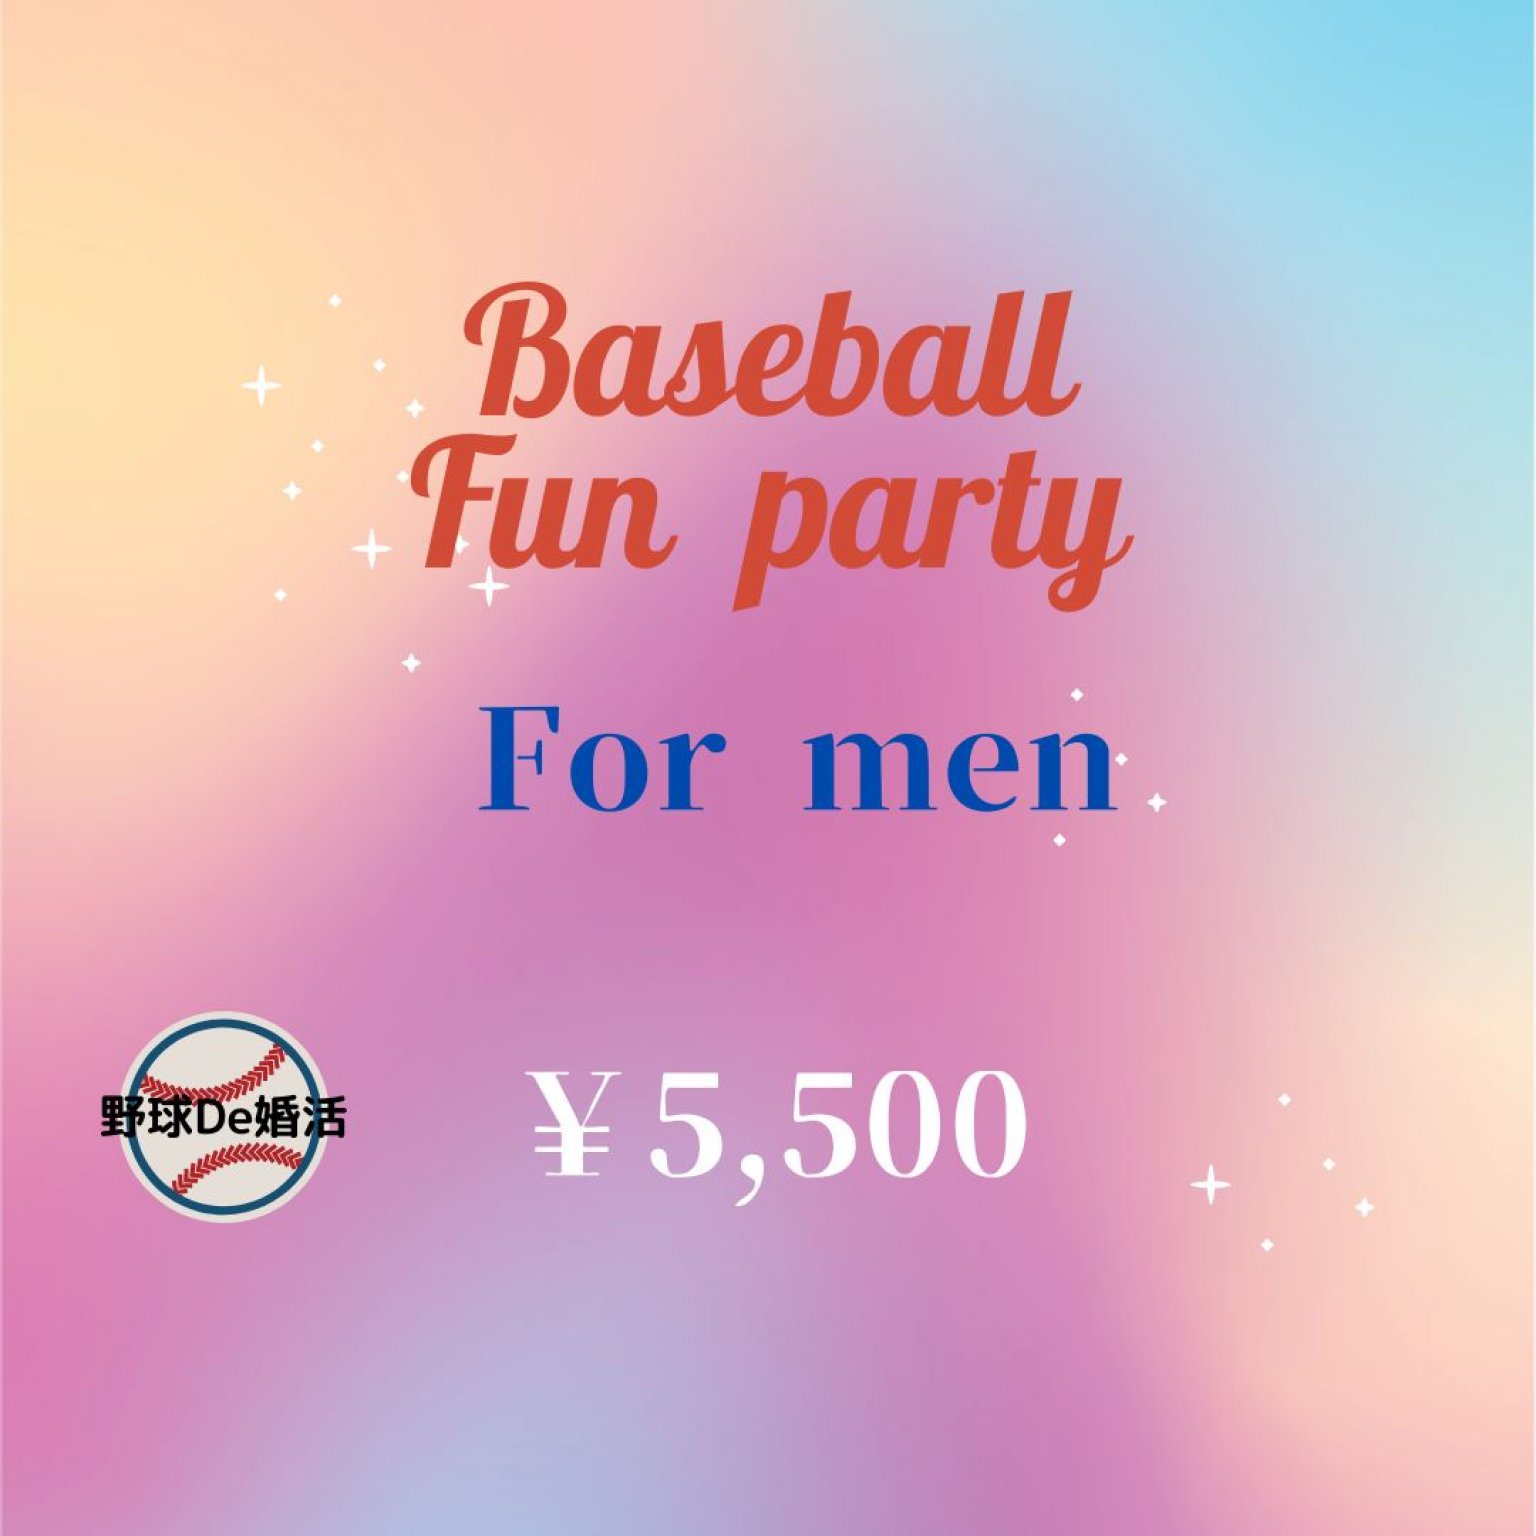 Baseball Fan Party For Men